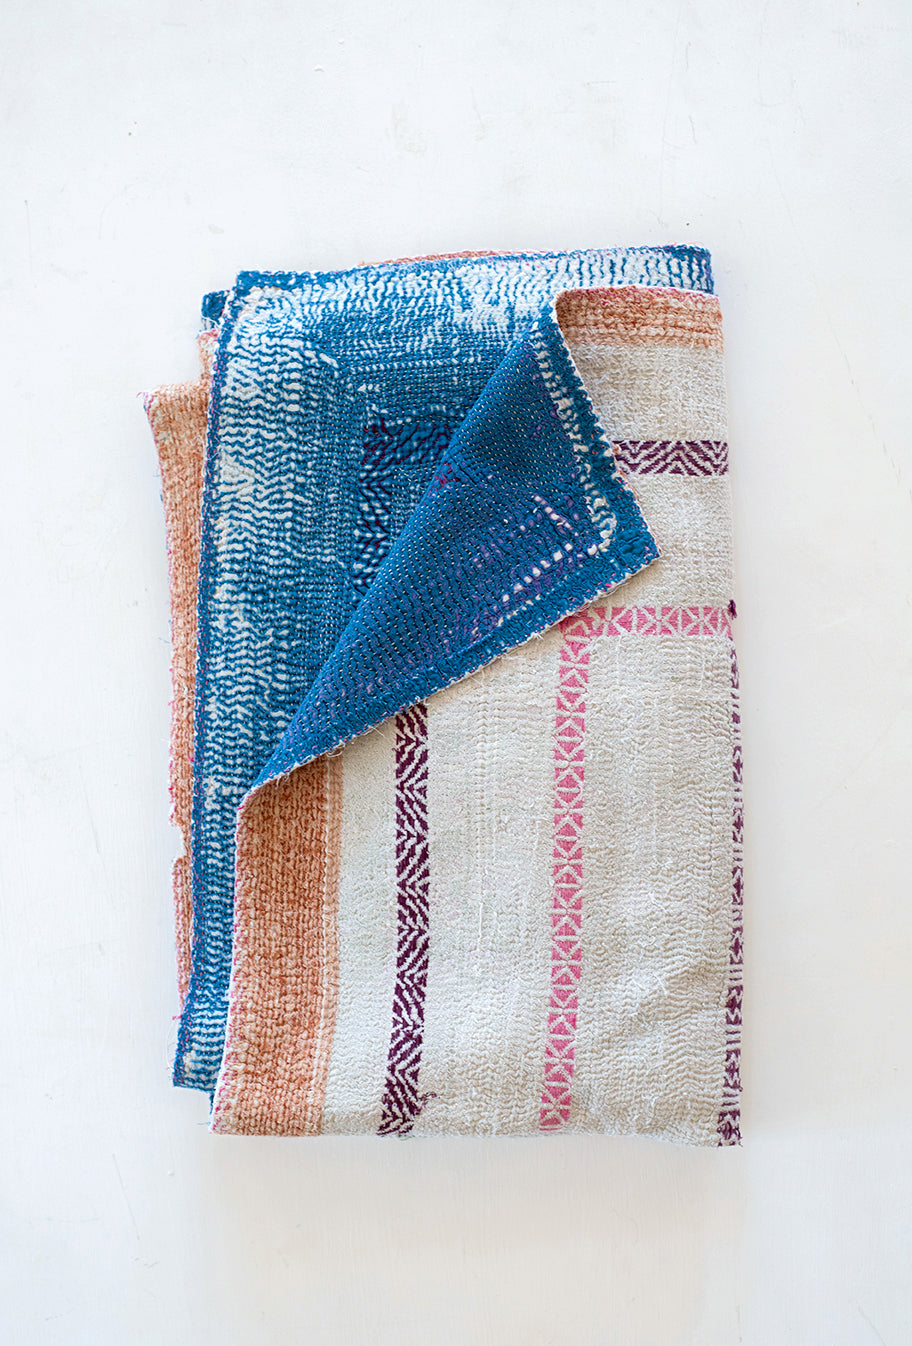 The Elm Quilt – Vintage Kantha Quilt